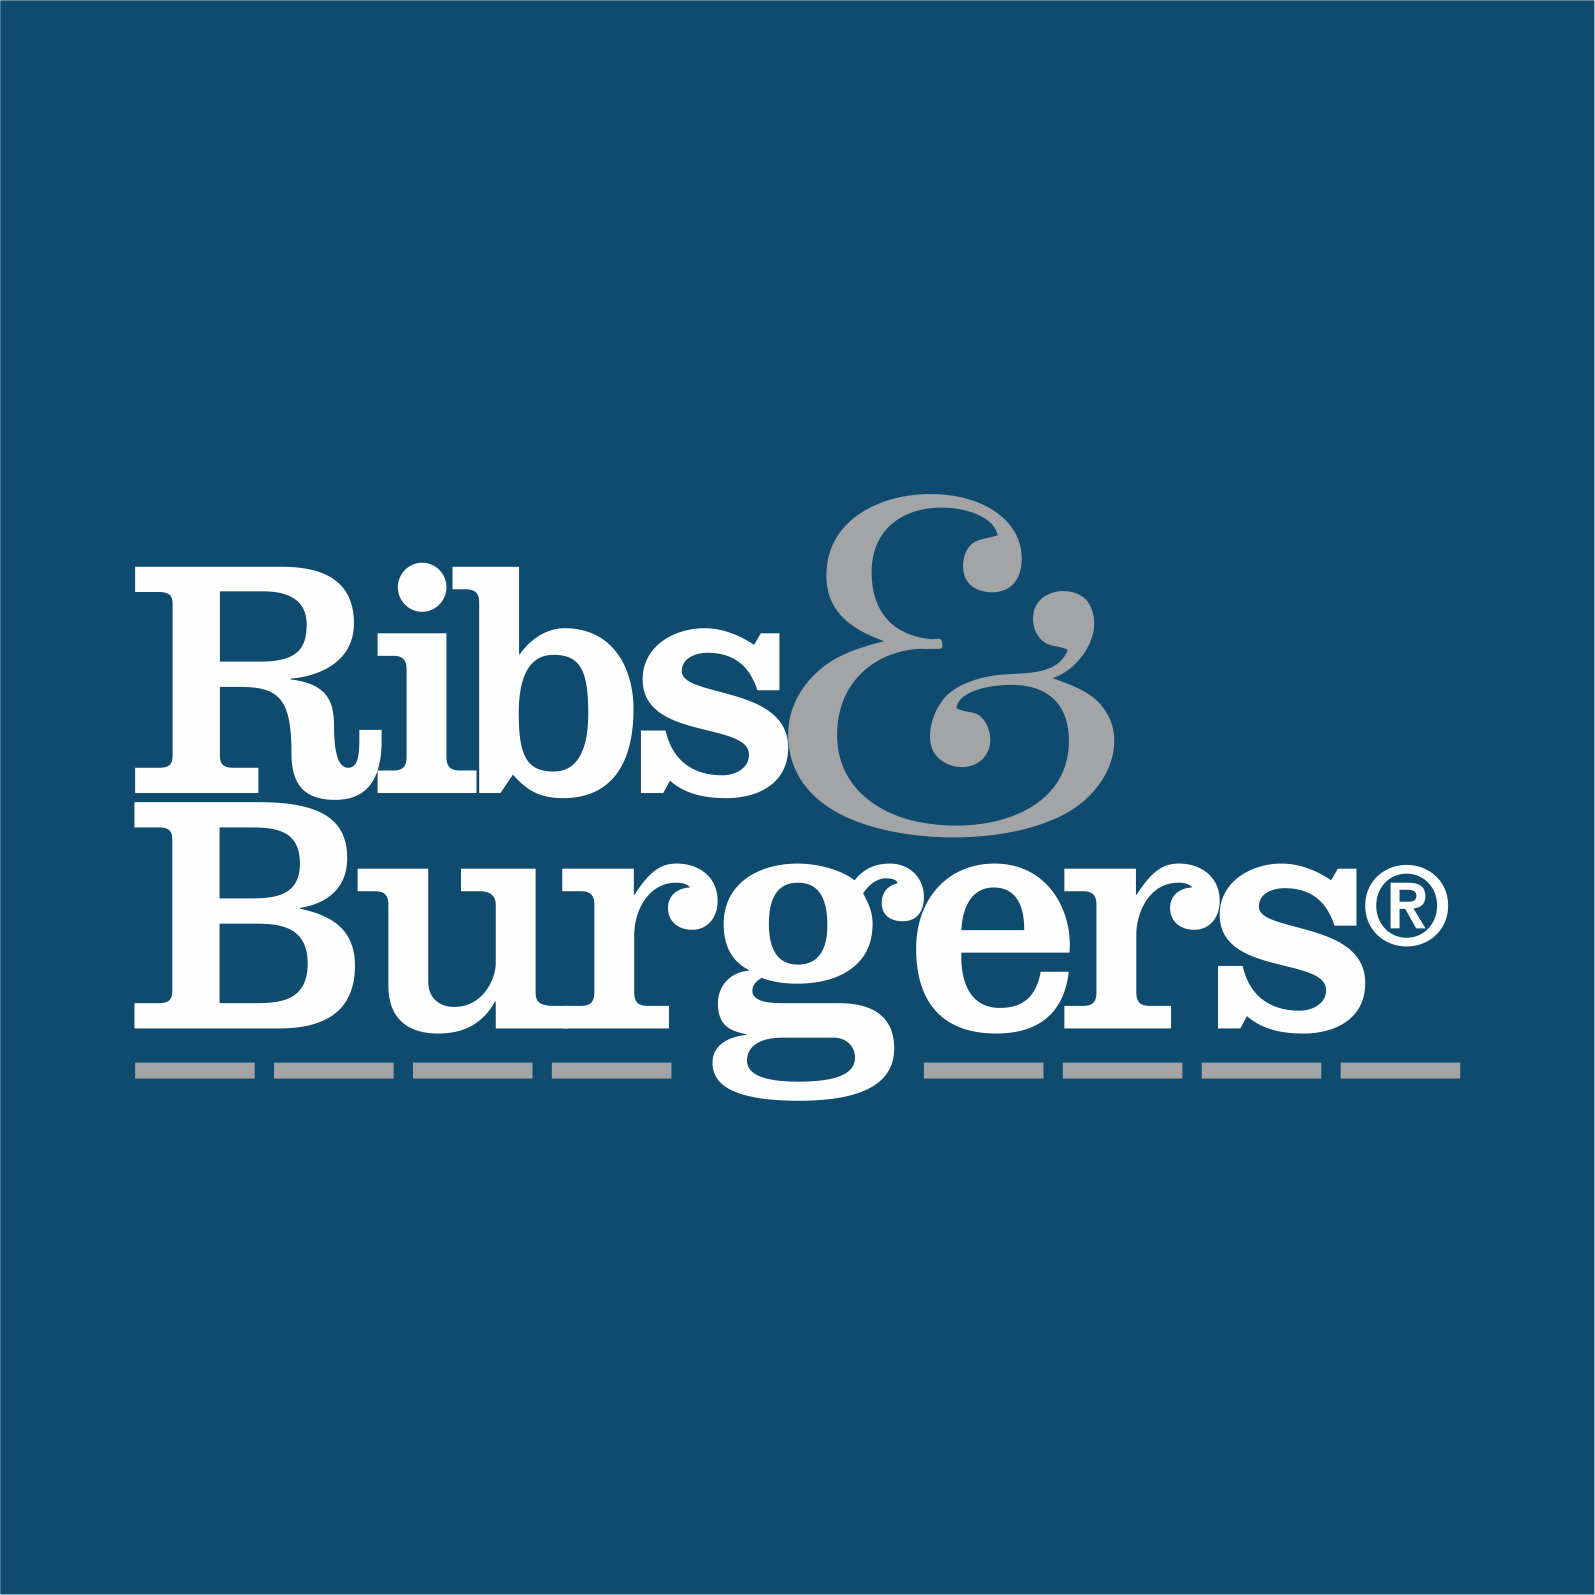 Ribs & Burgers Rhodes - Rhodes, NSW 2138 - (02) 9743 0880 | ShowMeLocal.com